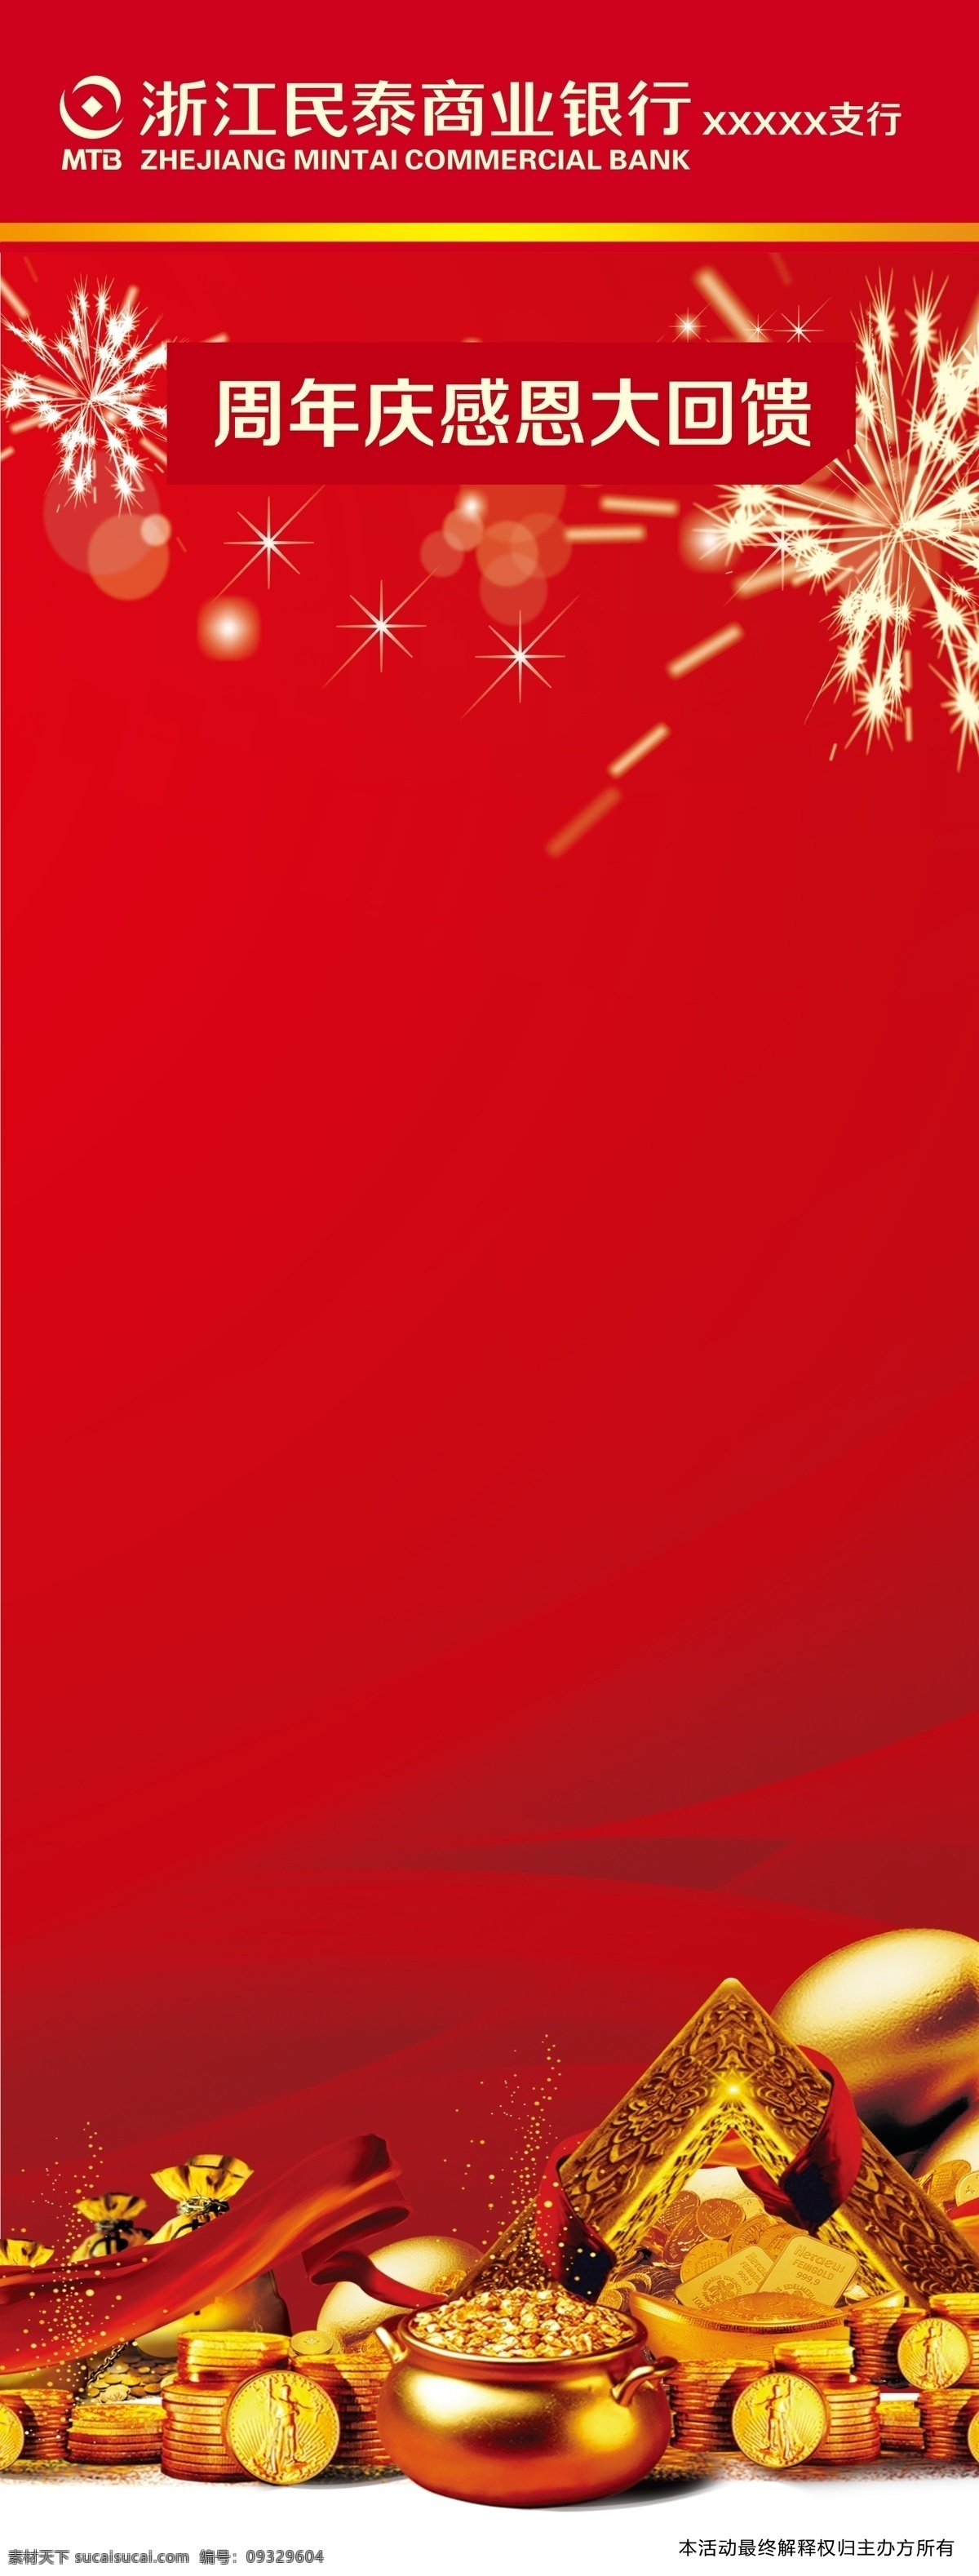 民泰银行 展架 画册 金币 金蛋 折页 红色 烟画 标志 新logo